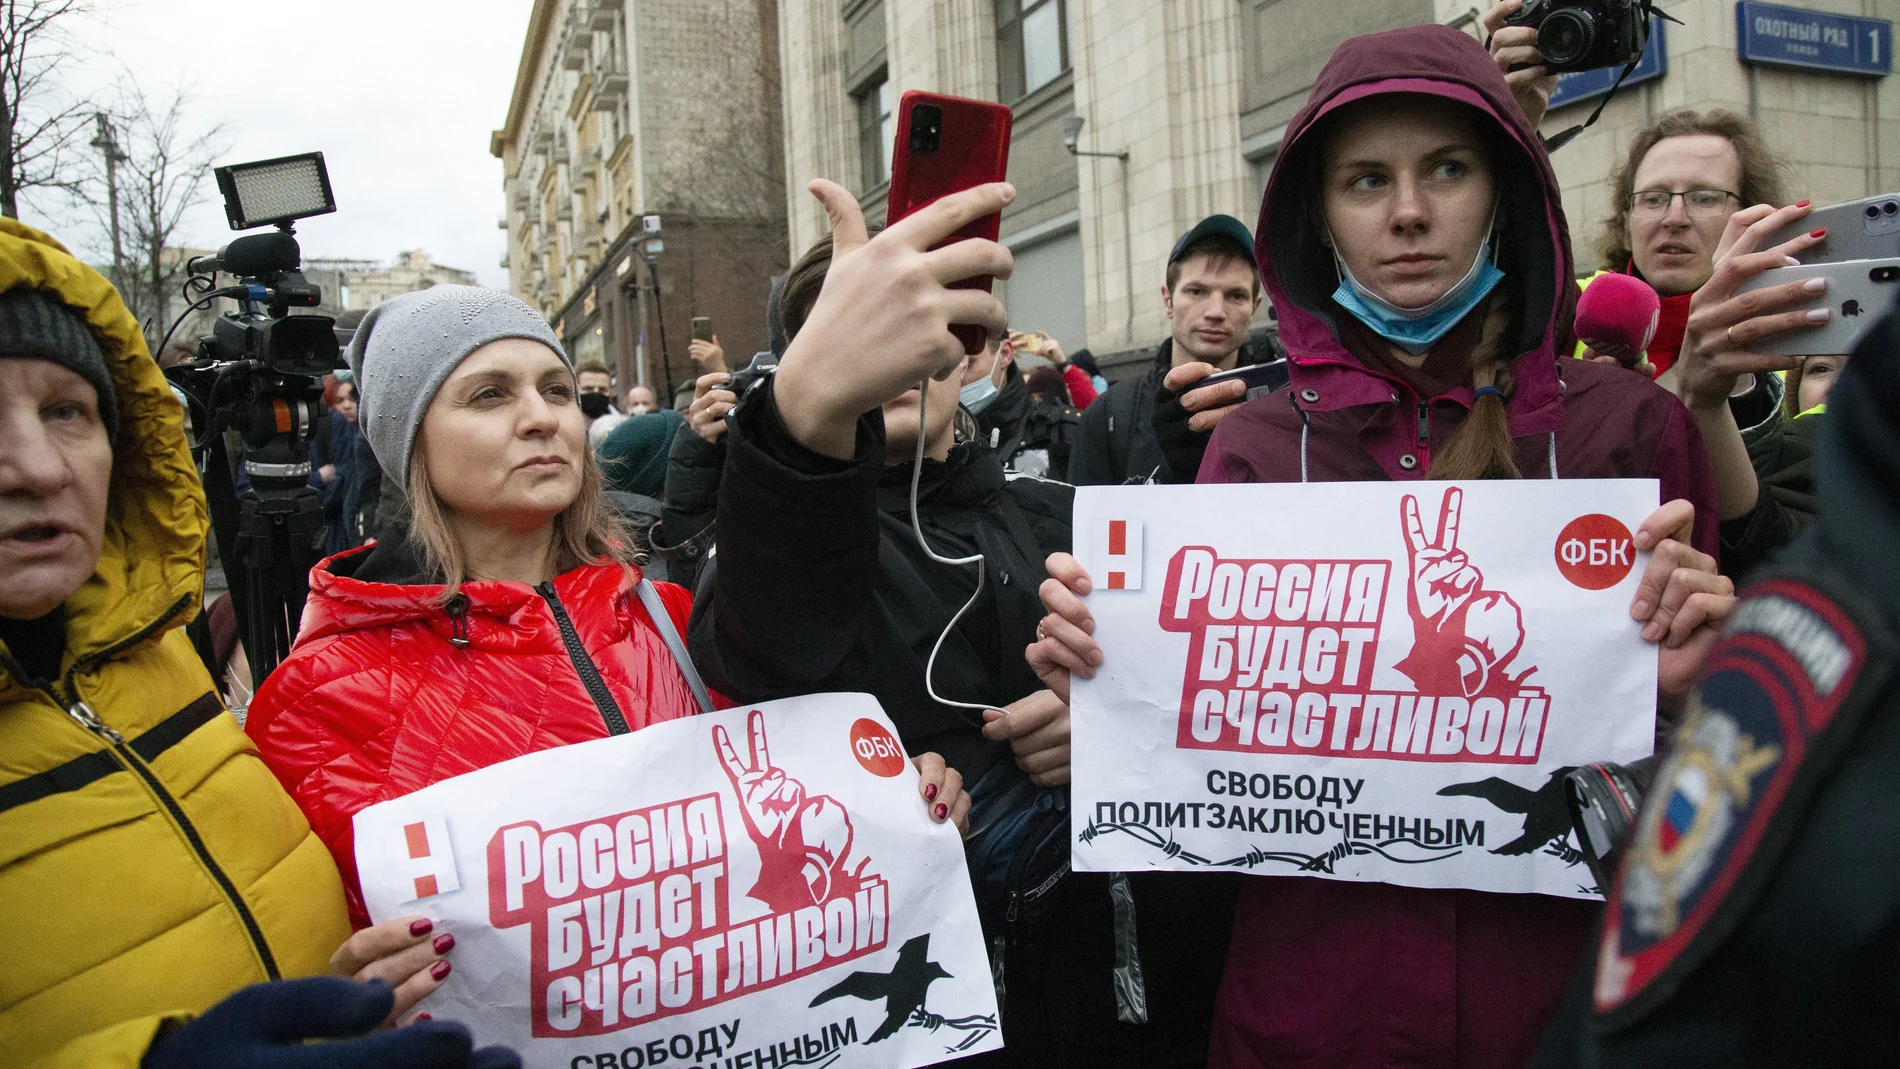 Los manifestantes sostienen carteles que dicen "¡Rusia será libre, libertad para los presos políticos!" durante la manifestación de la oposición en apoyo de Navalni en el centro de Moscú, cerca de la Plaza Roja, Rusia, el miércoles 21 de abril de 2021